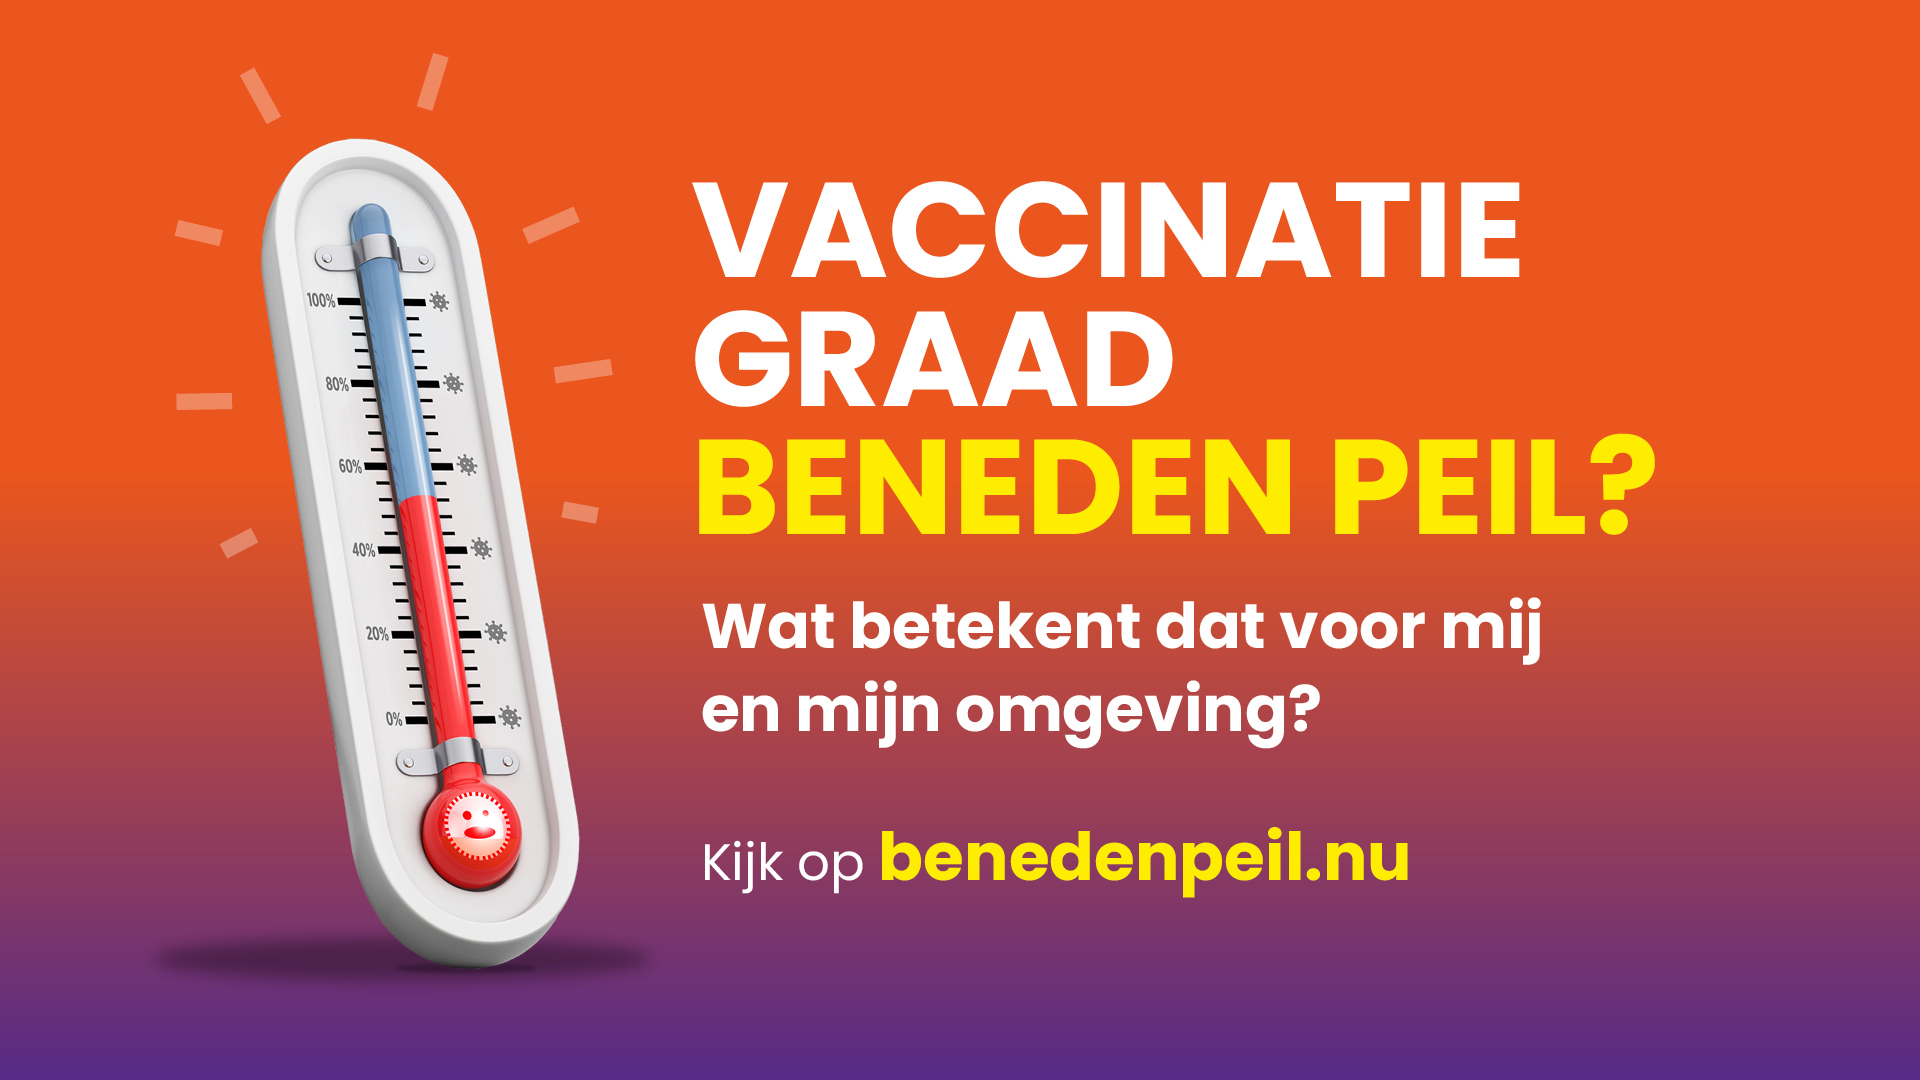 Nederlandse Influenza Stichting